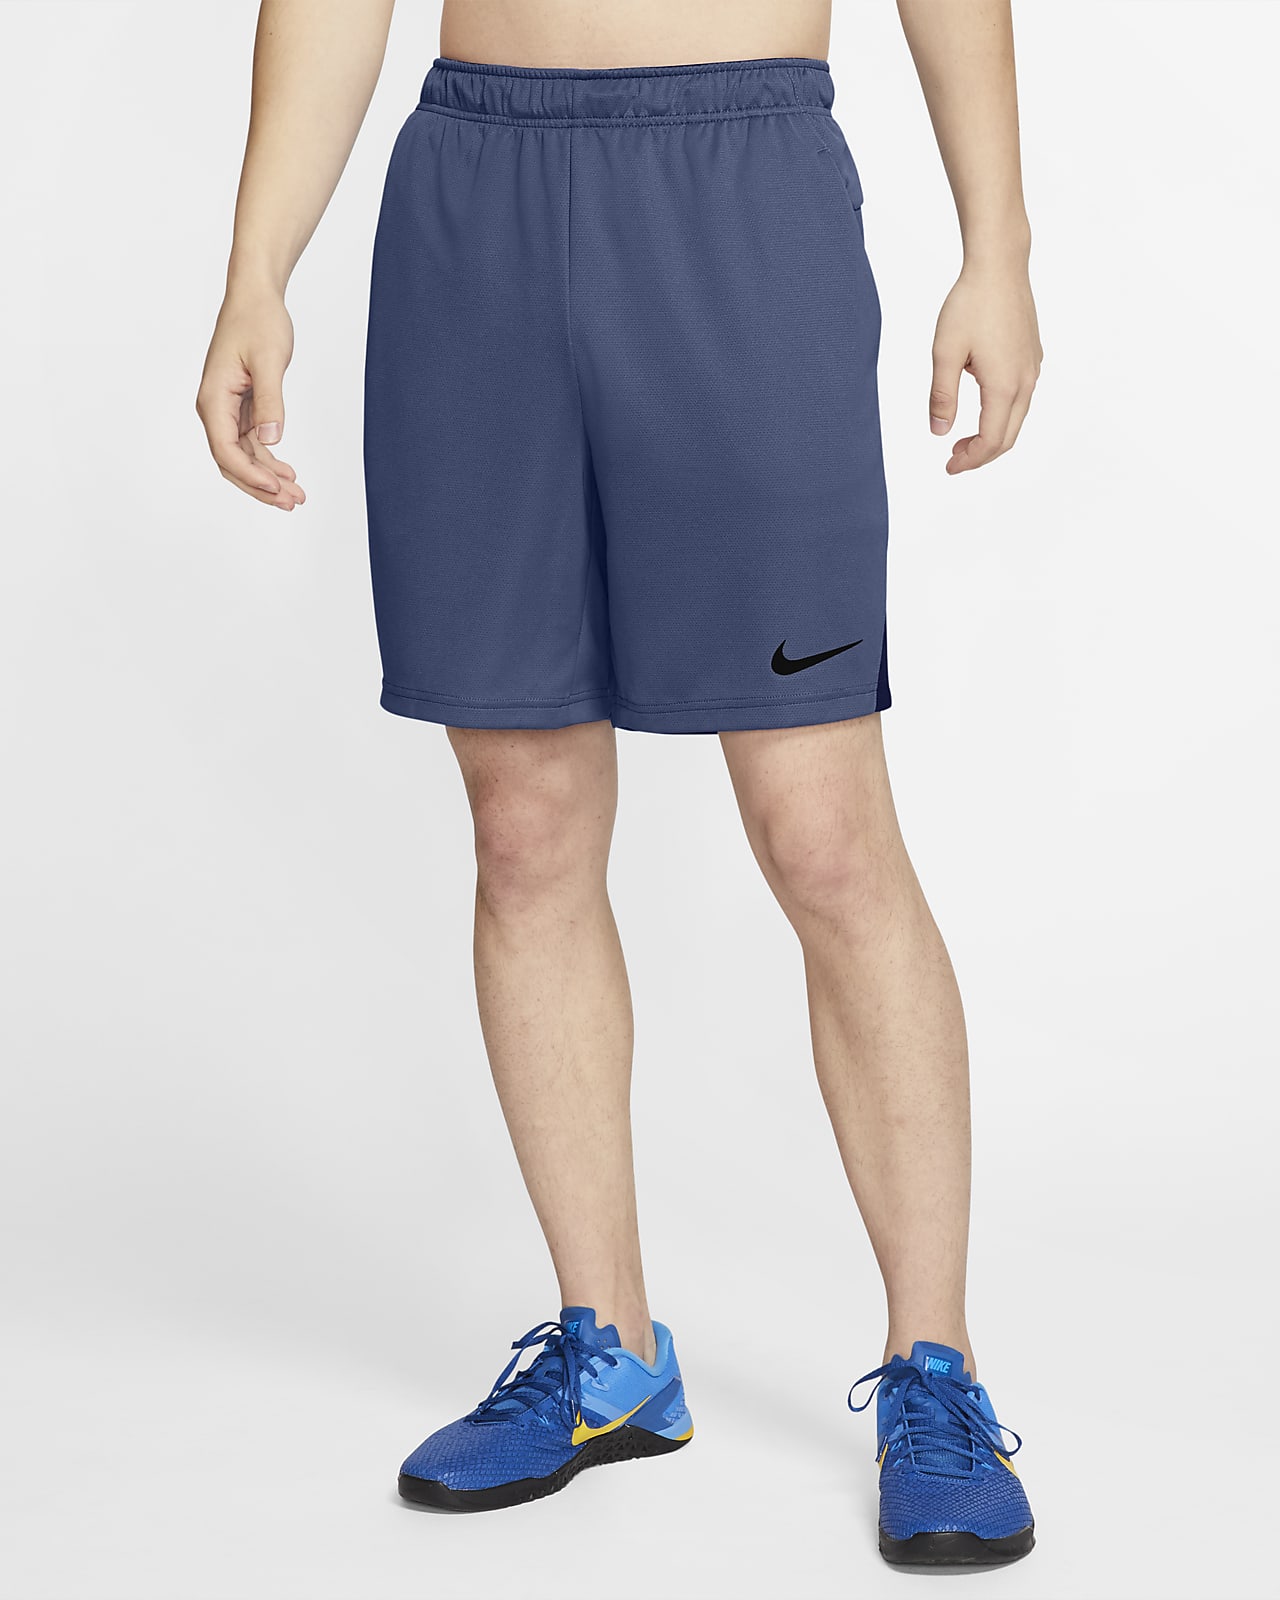 Nike Dri-FIT Men's Training Shorts. Nike SI